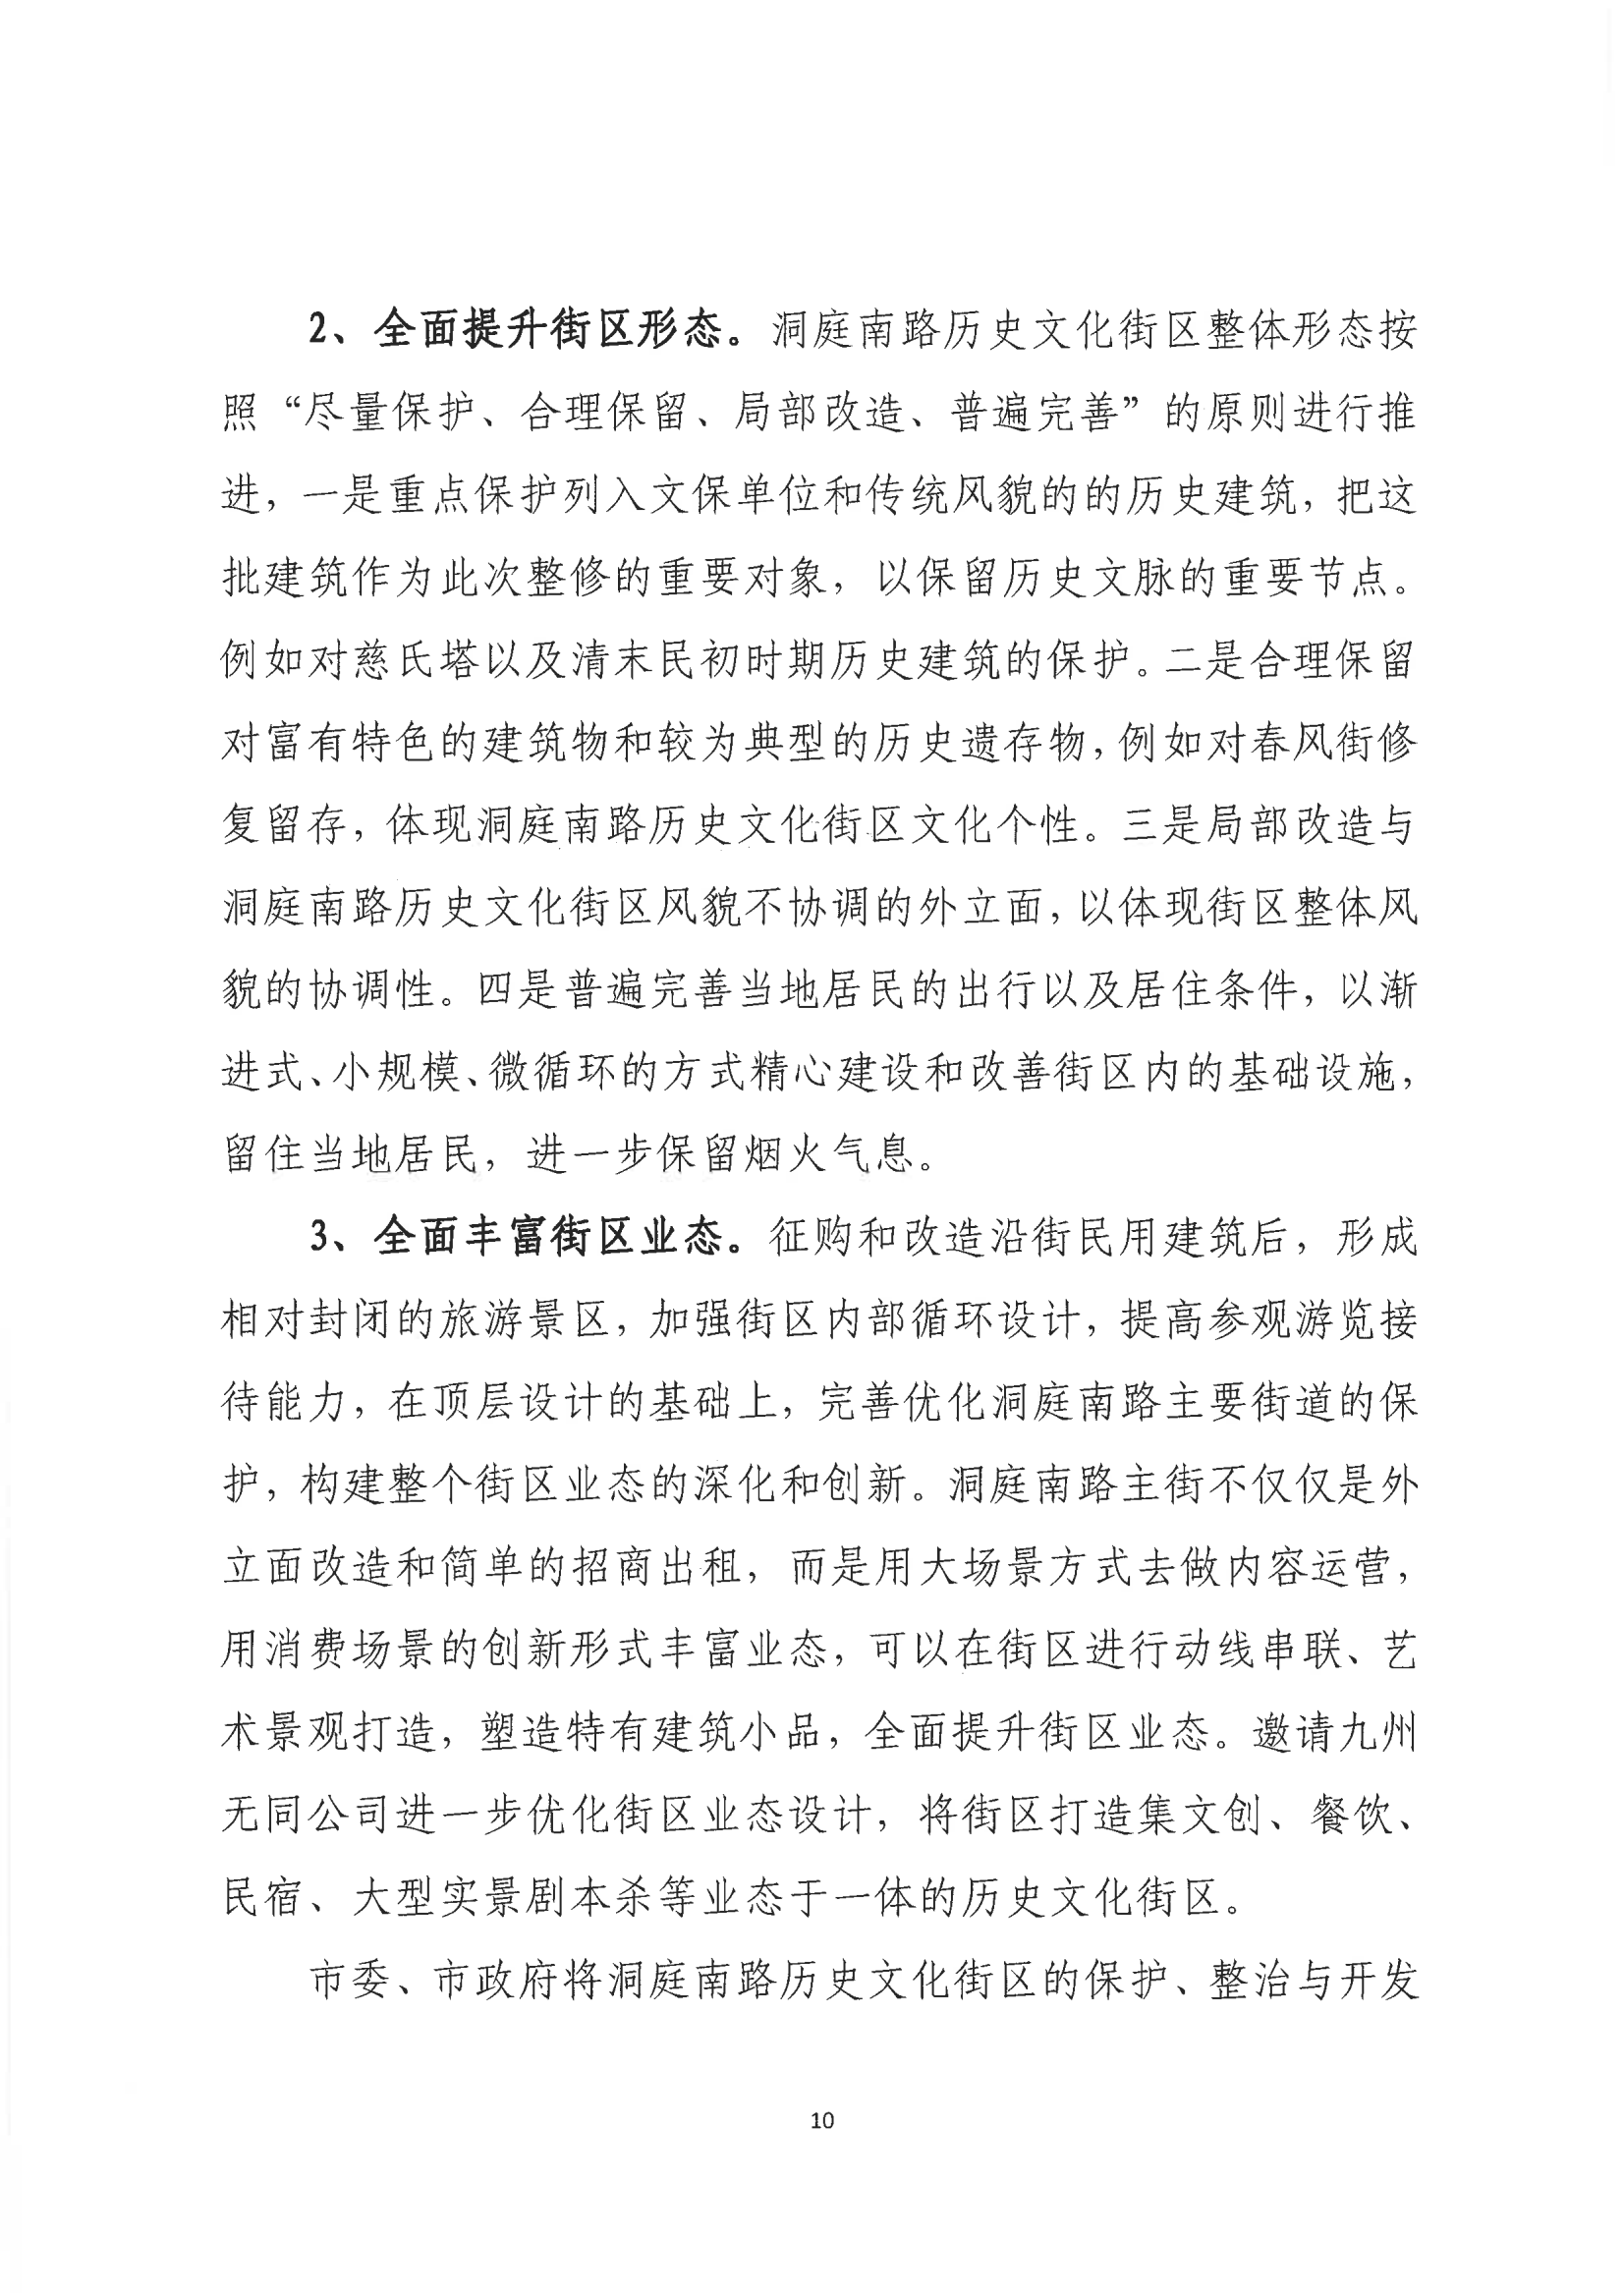 001号提案关于岳阳市政协九届一次会议第001号提案的回复(1)_09.png